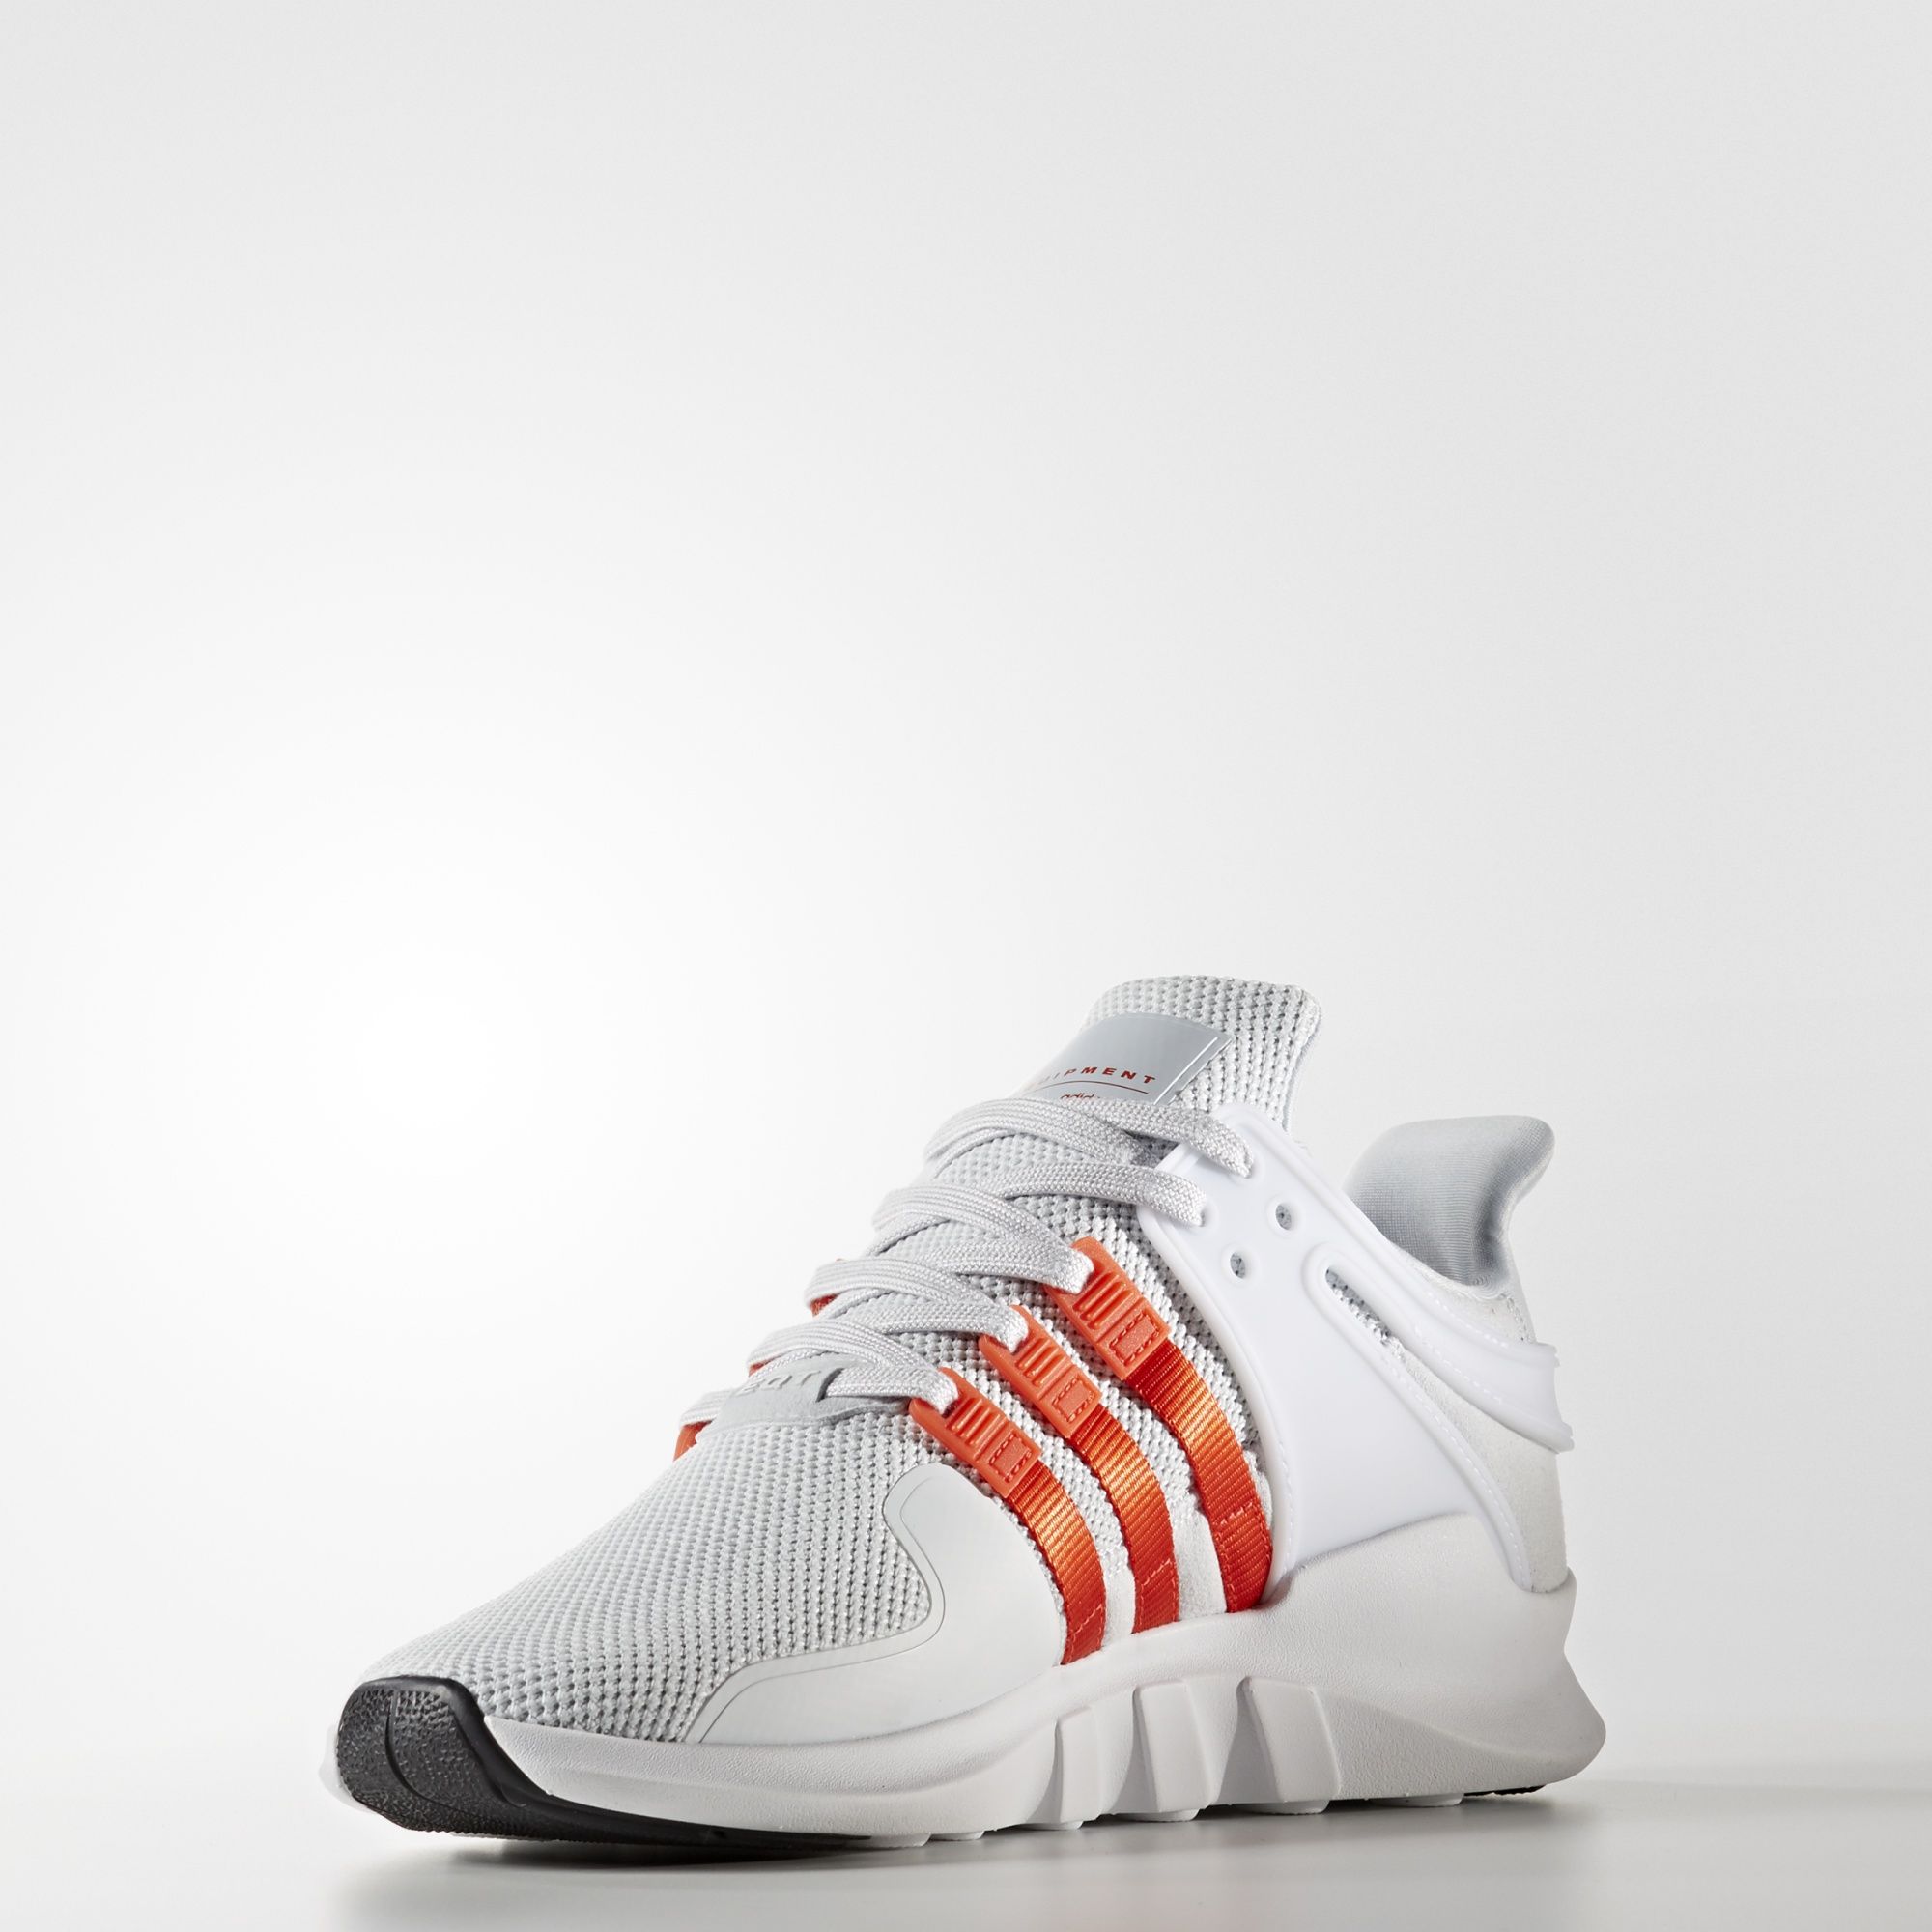 adidas-eqt-support-adv-white-bold-orange-3